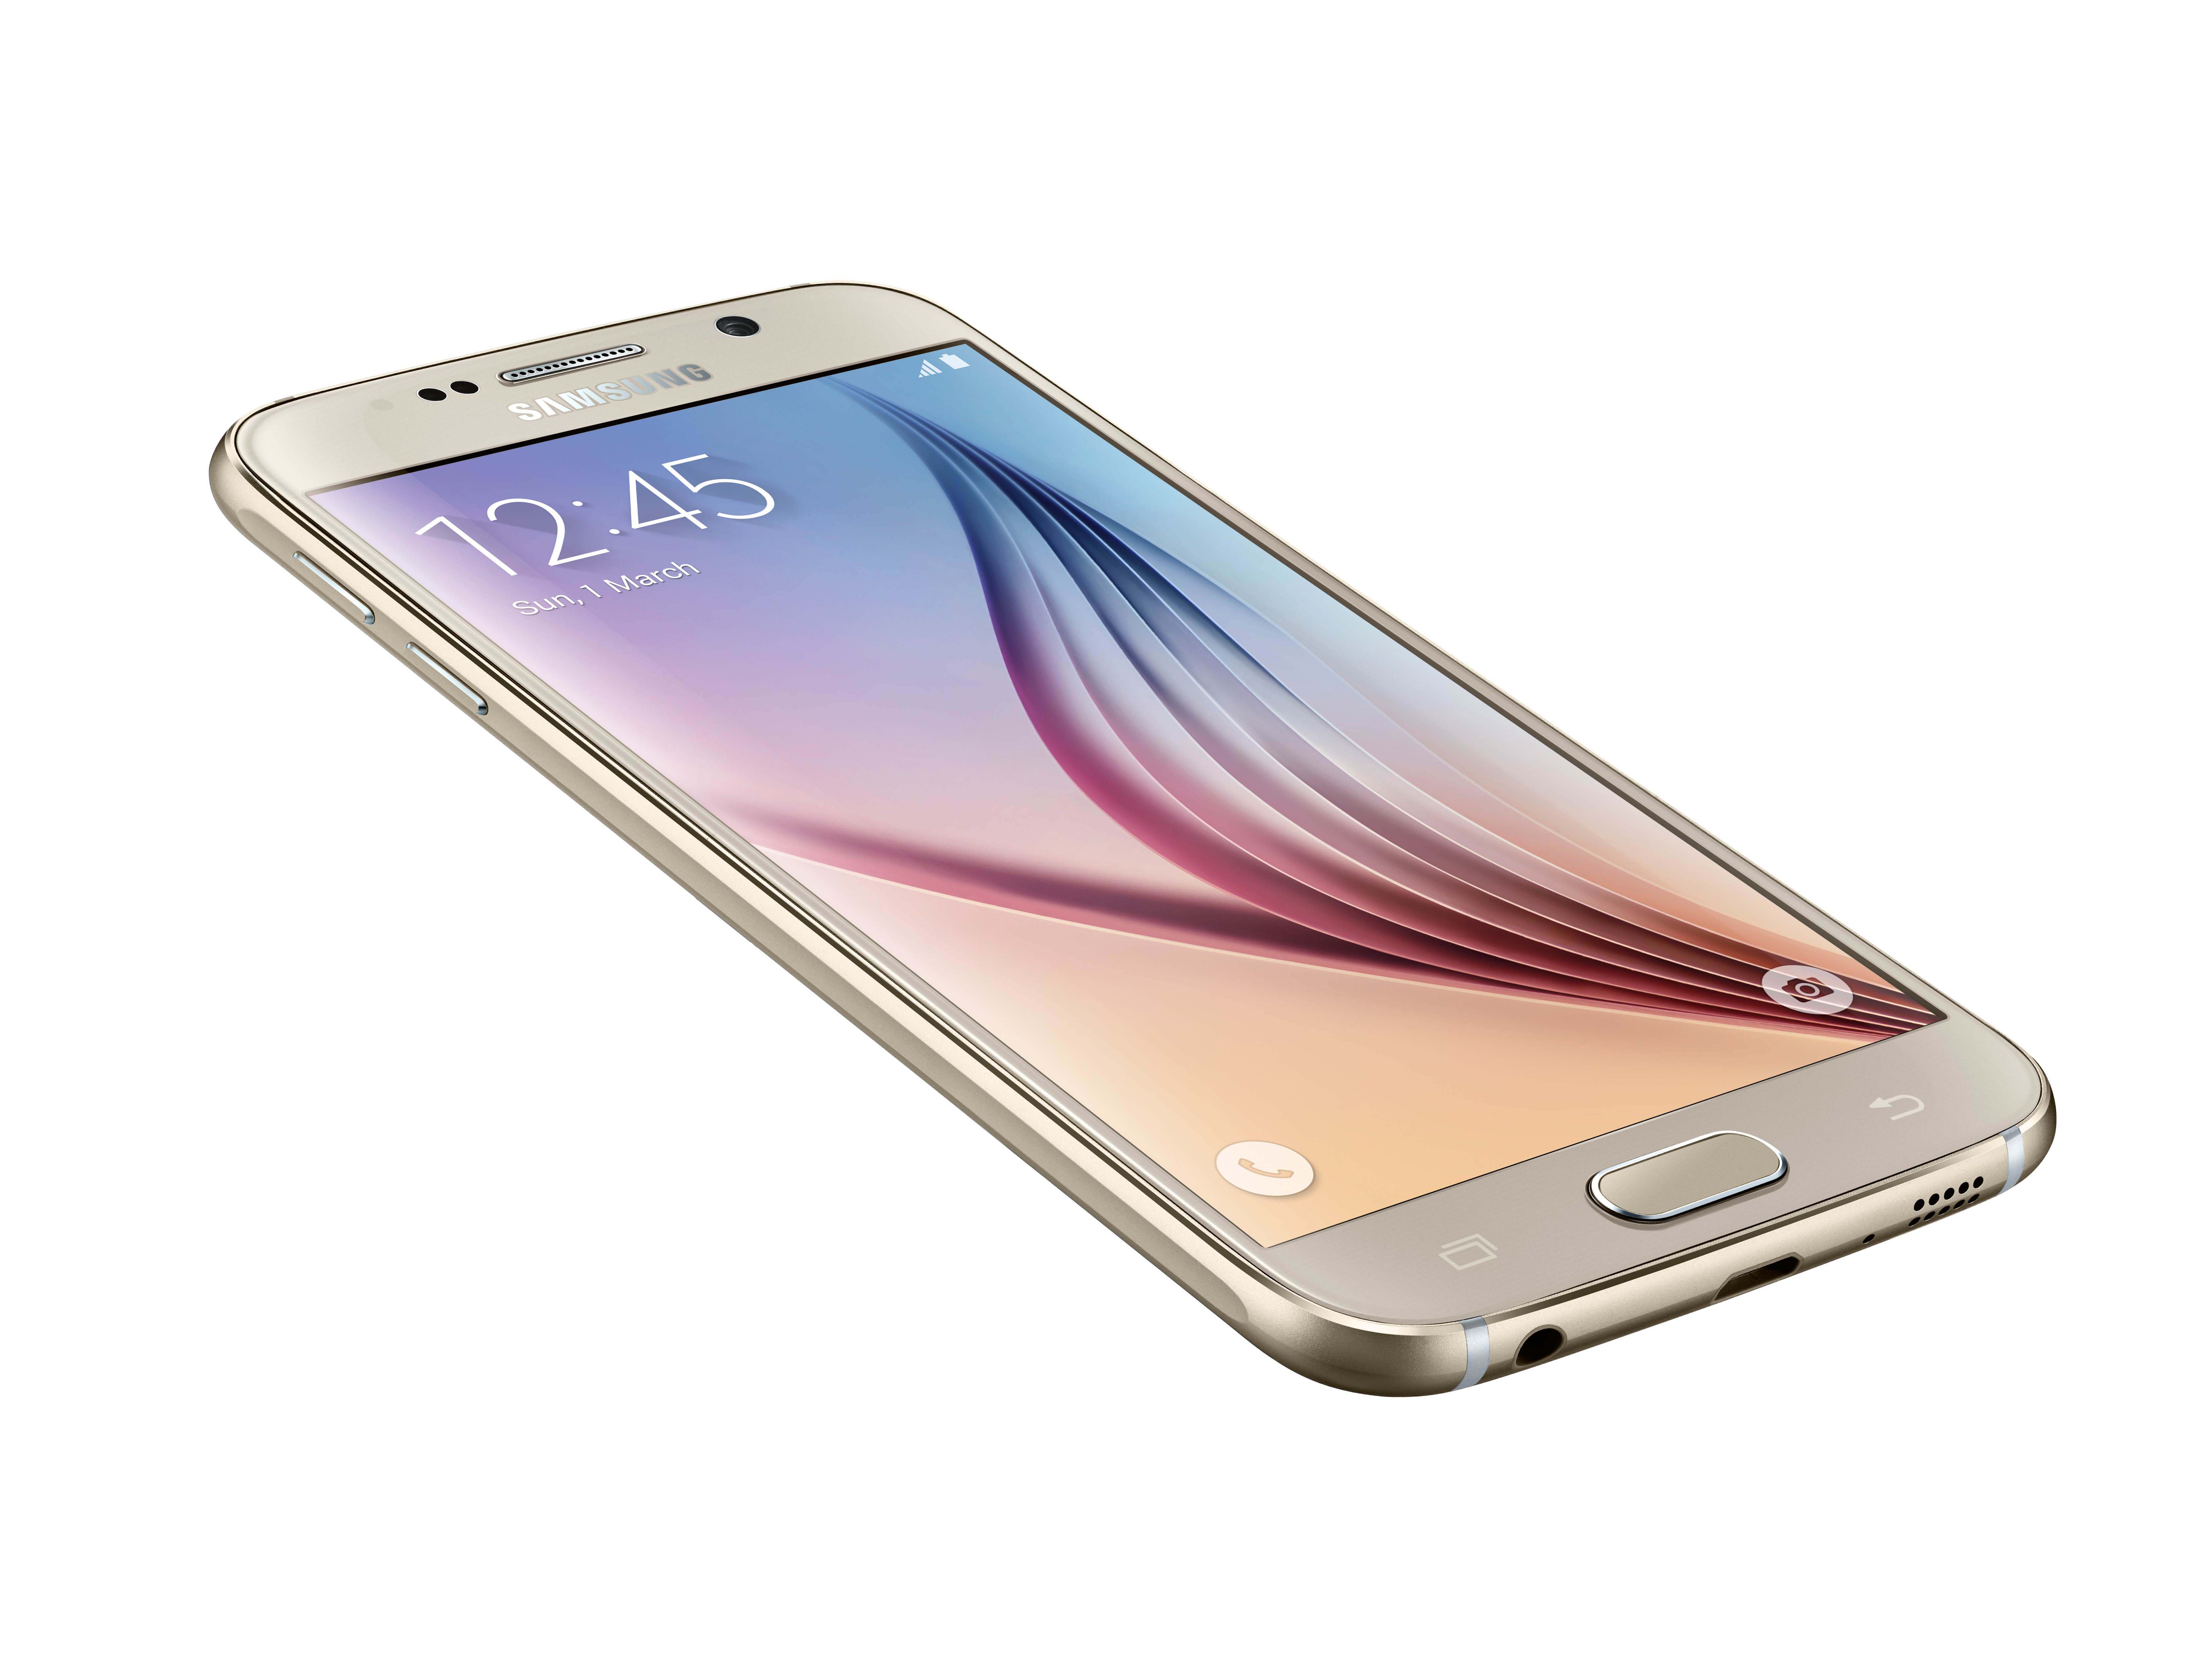 Samsung Galaxy S6 - External Reviews